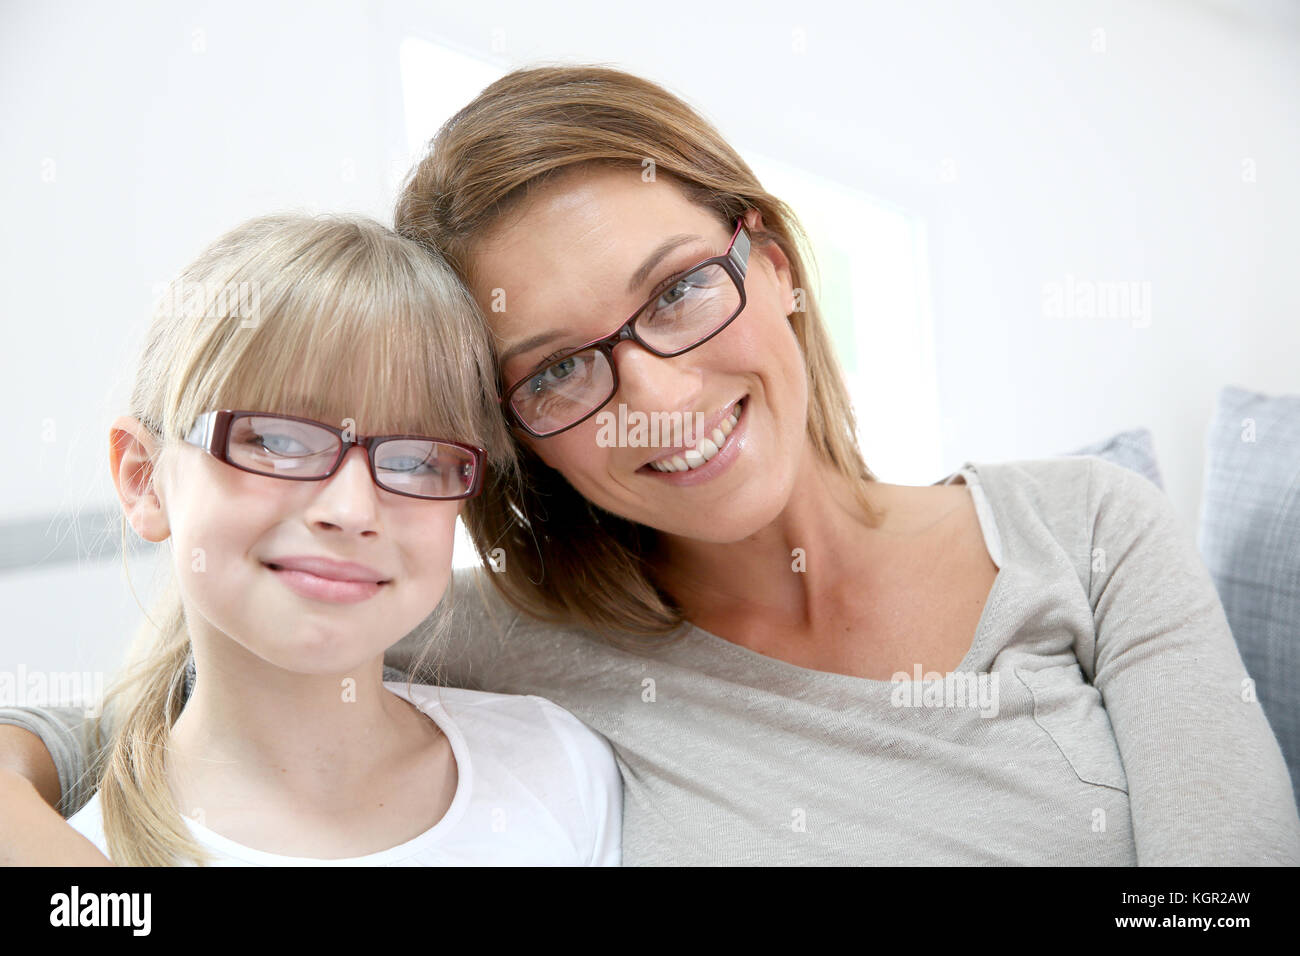 Ritratto di donna sorridente e una ragazza indossando occhiali da vista Foto Stock